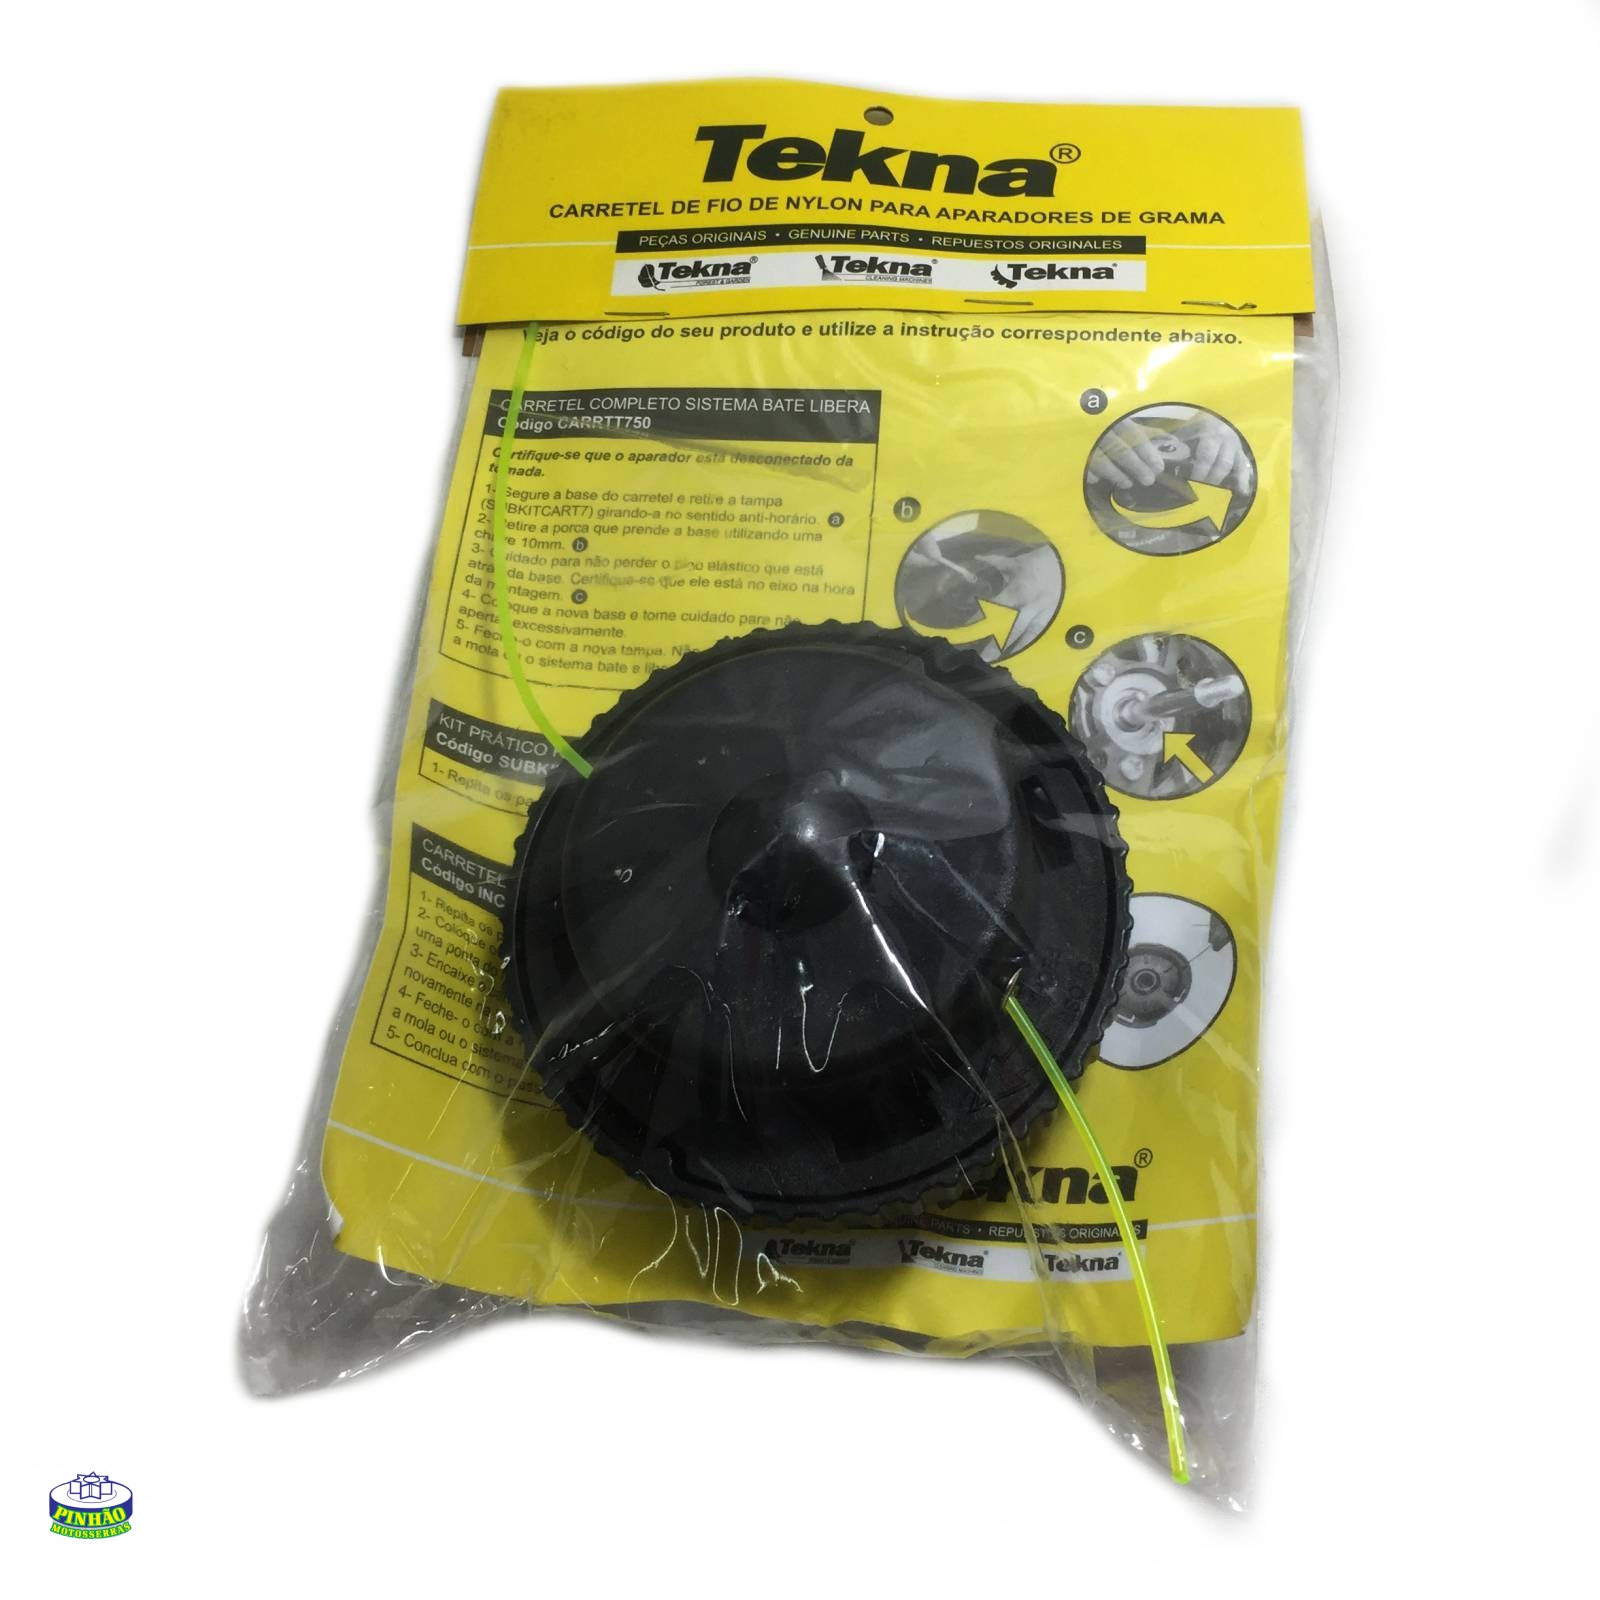 Kit carretel para aparadores de grama elétricos Tekna TT700 - PINHAO MOTOSSERRAS - ME